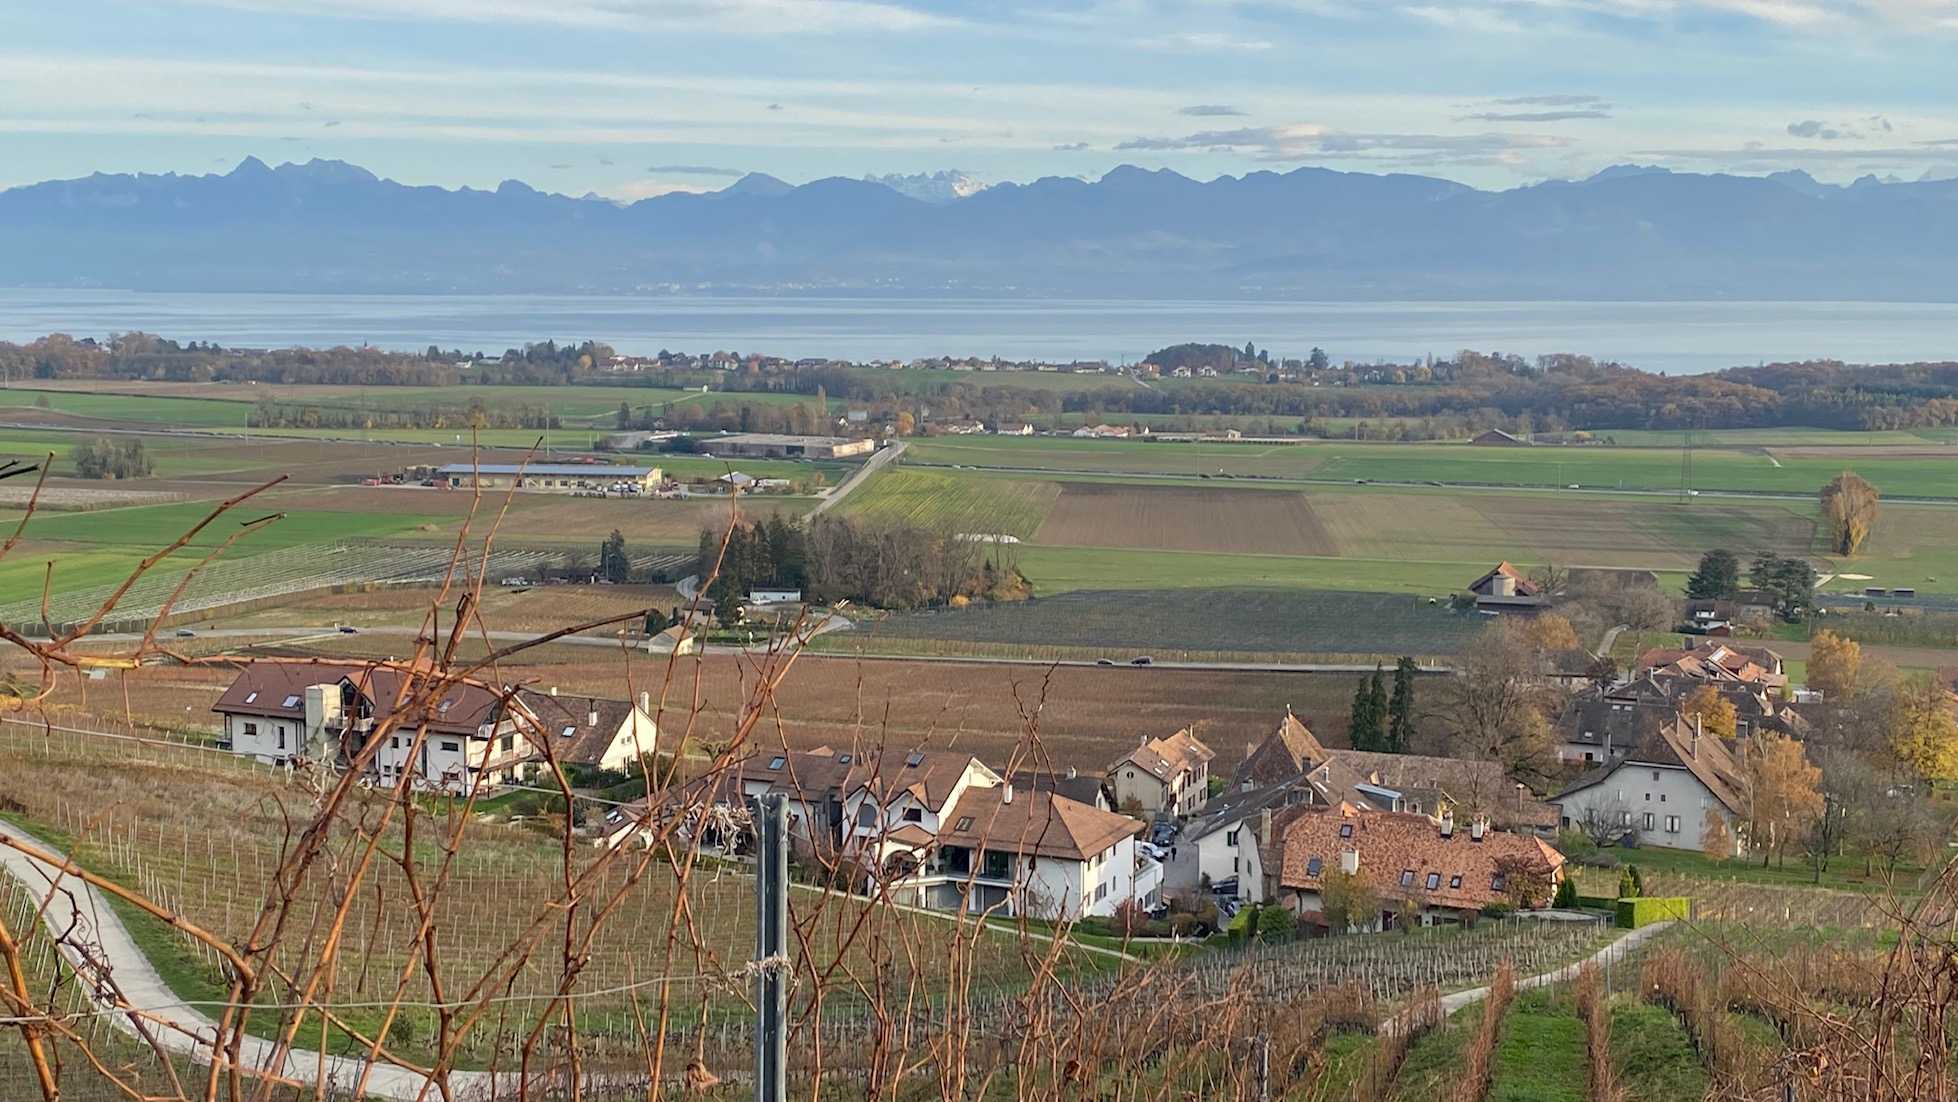 Panoramic view of the vineyards, Vaud